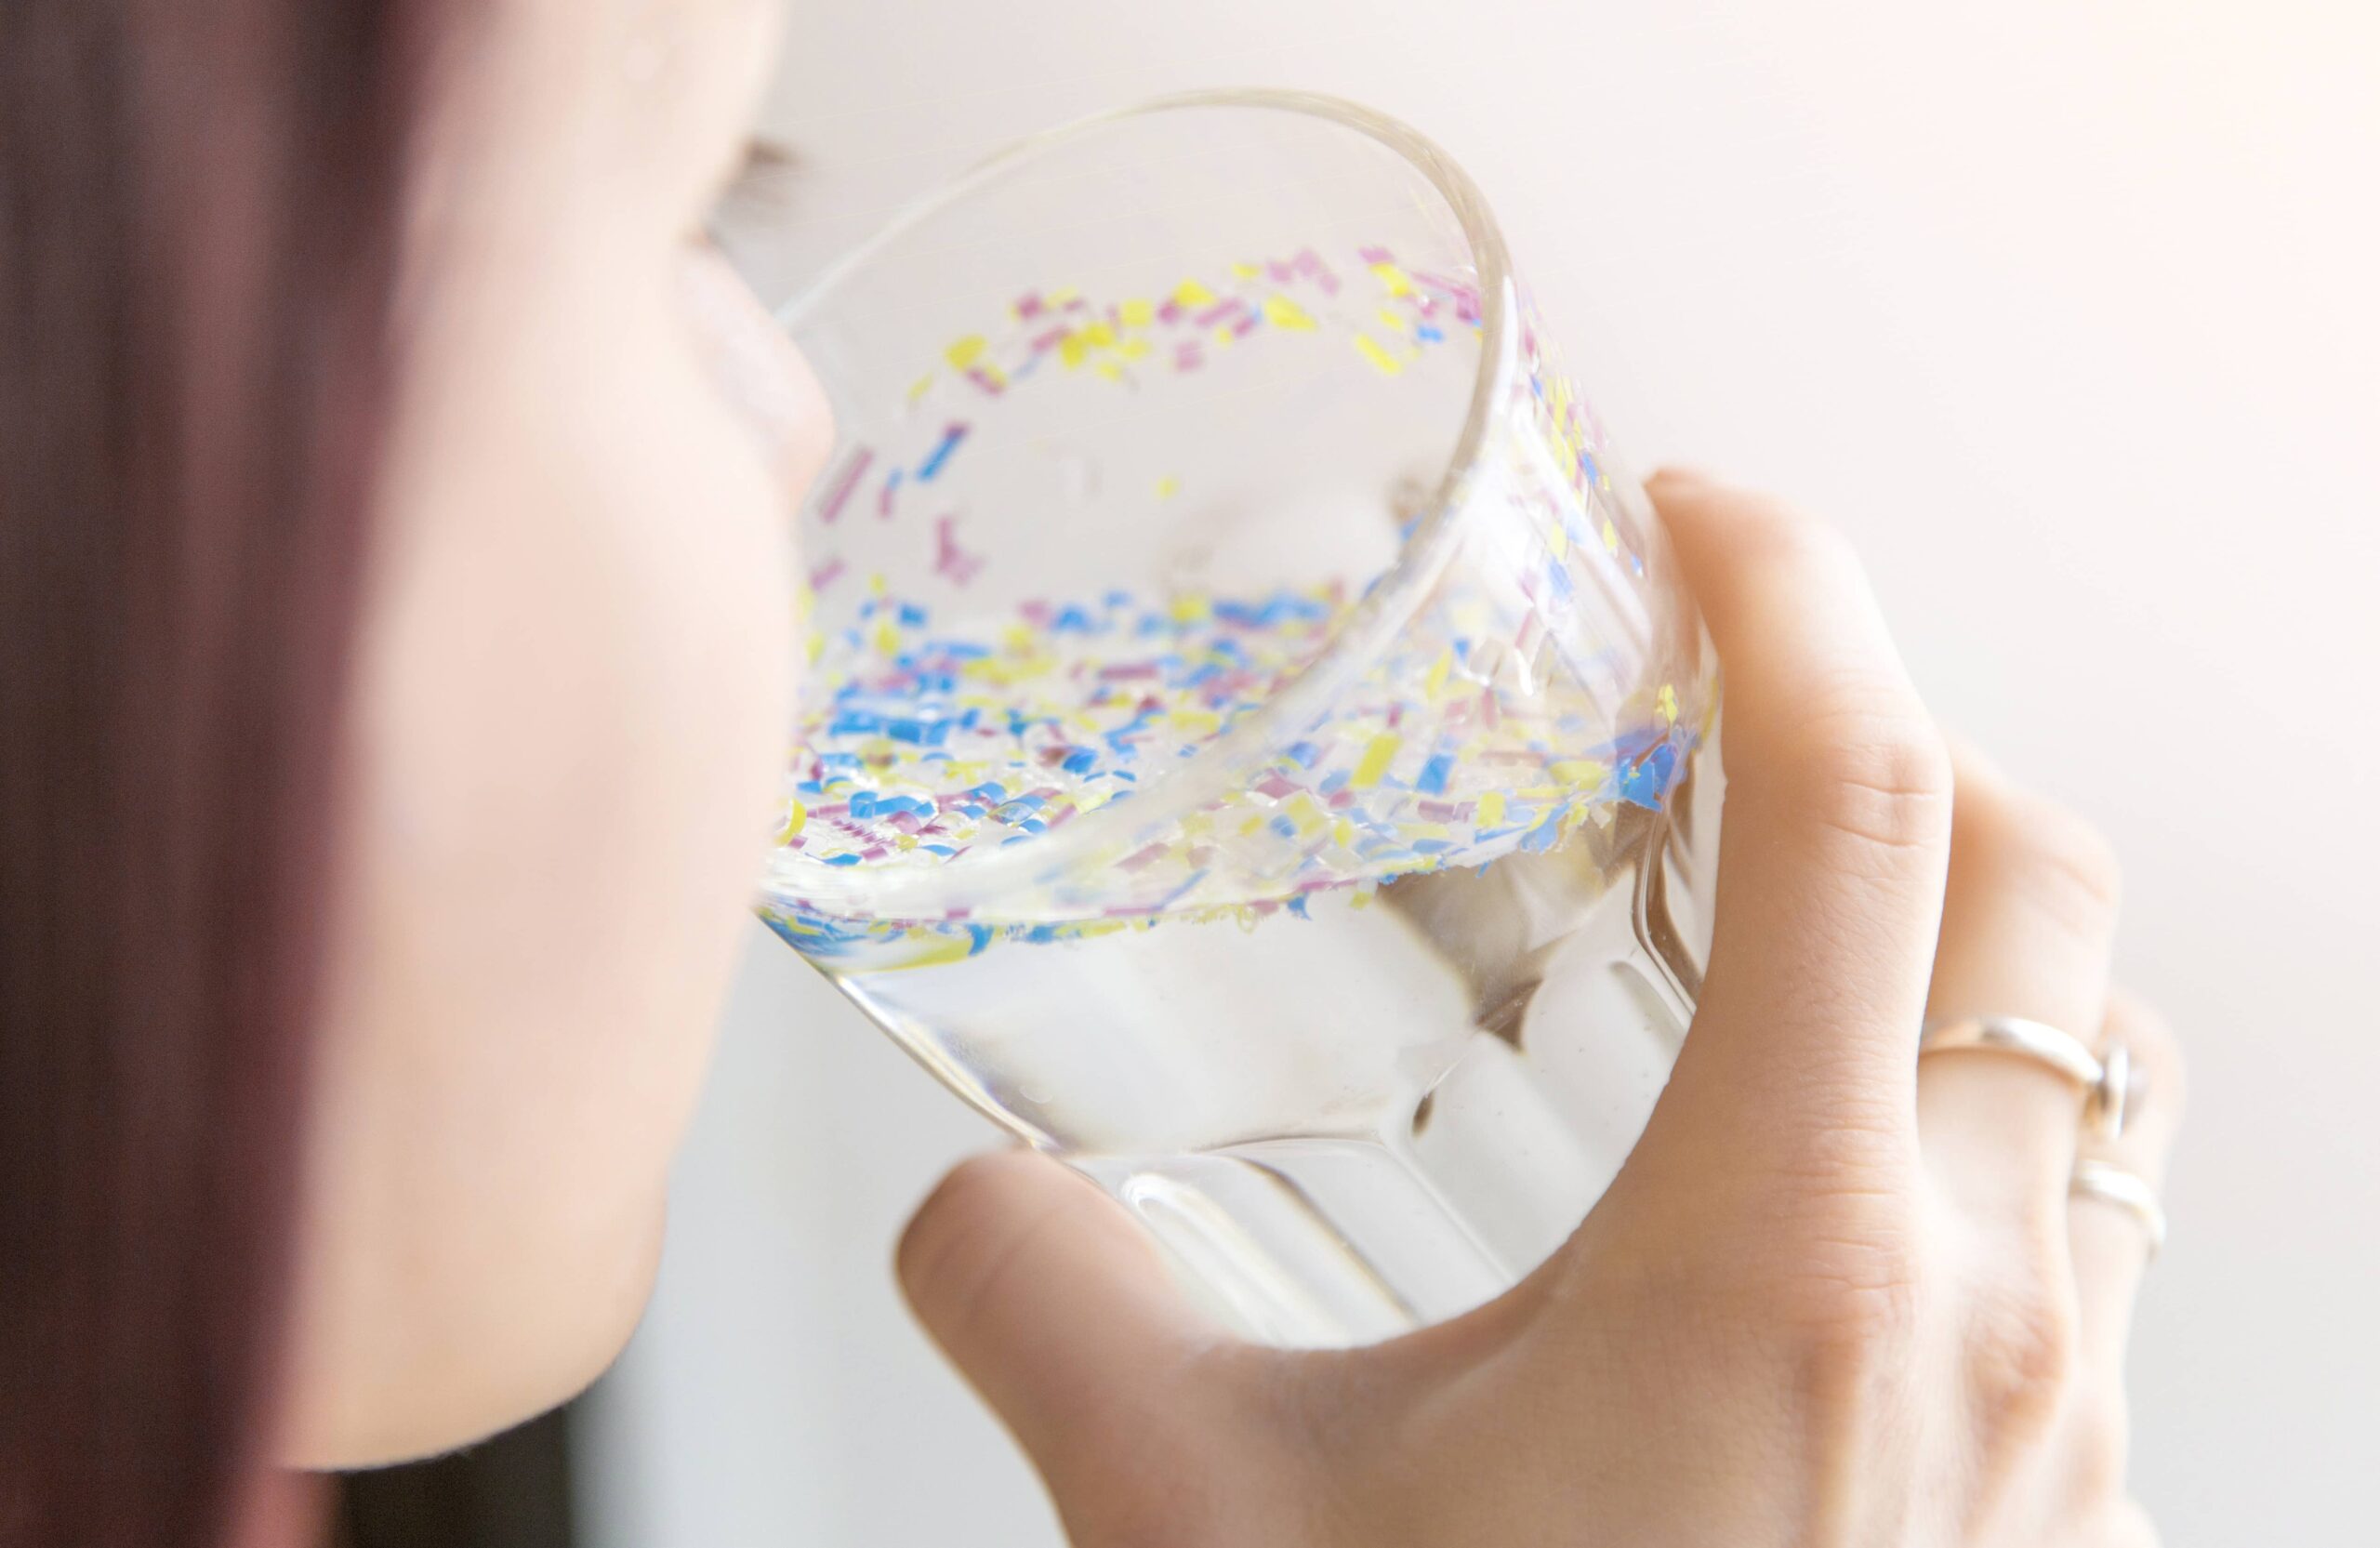 Mikroplastik: Die unsichtbare Gefahr für Umwelt und Gesundheit